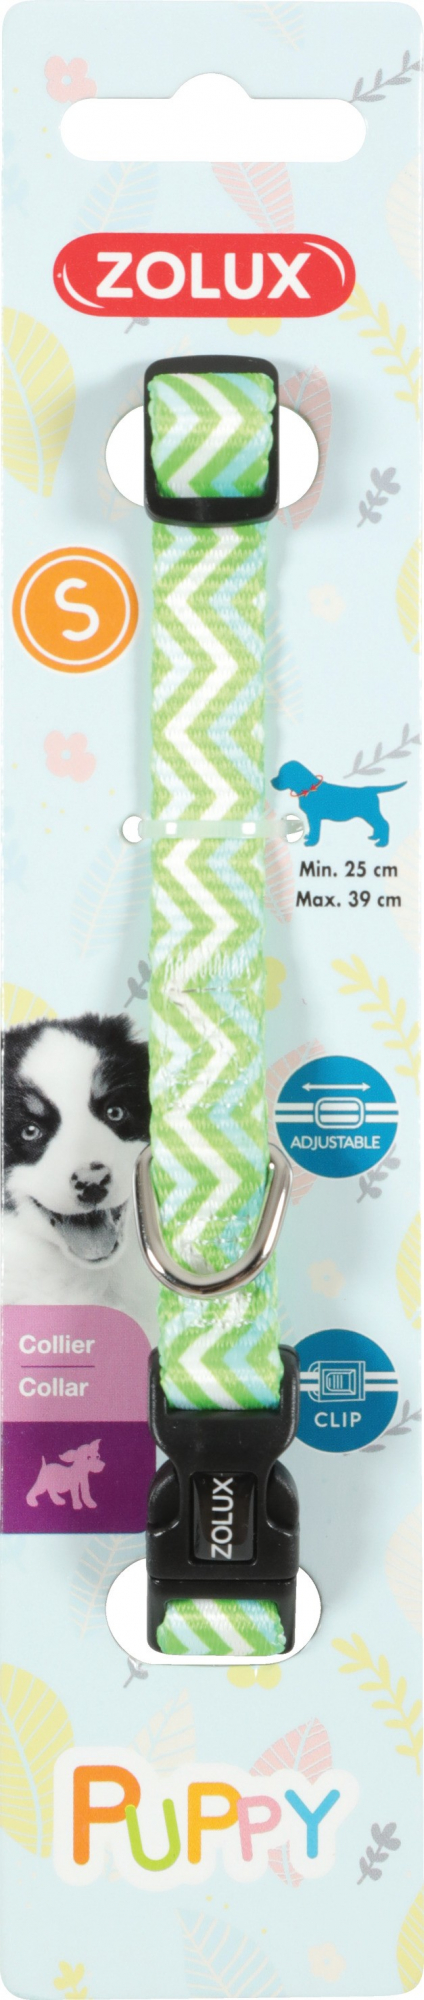 Collier nylon réglable chiot Puppy Pixie - vert